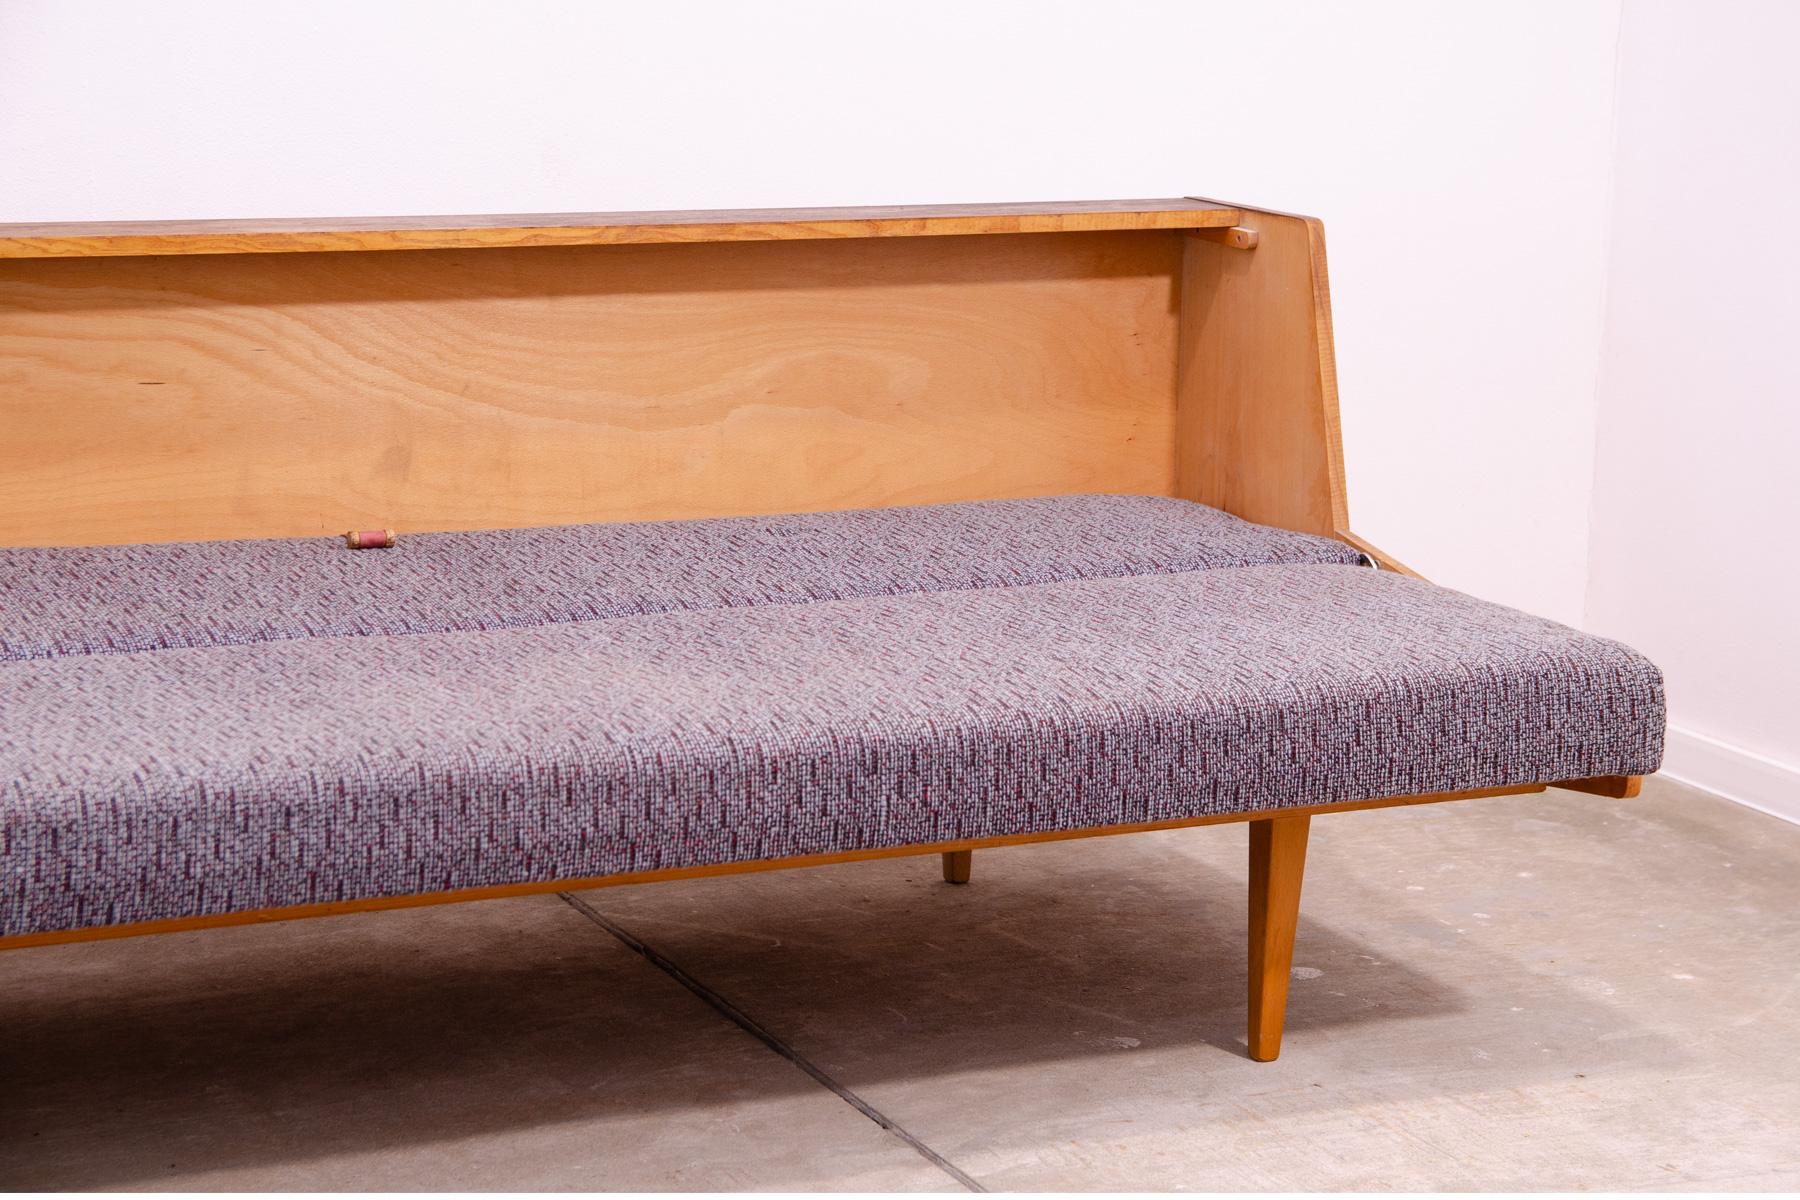 Midcentury Folding Sofabed by Tatra nabytok, 1970s, Czechoslovakia For Sale 10